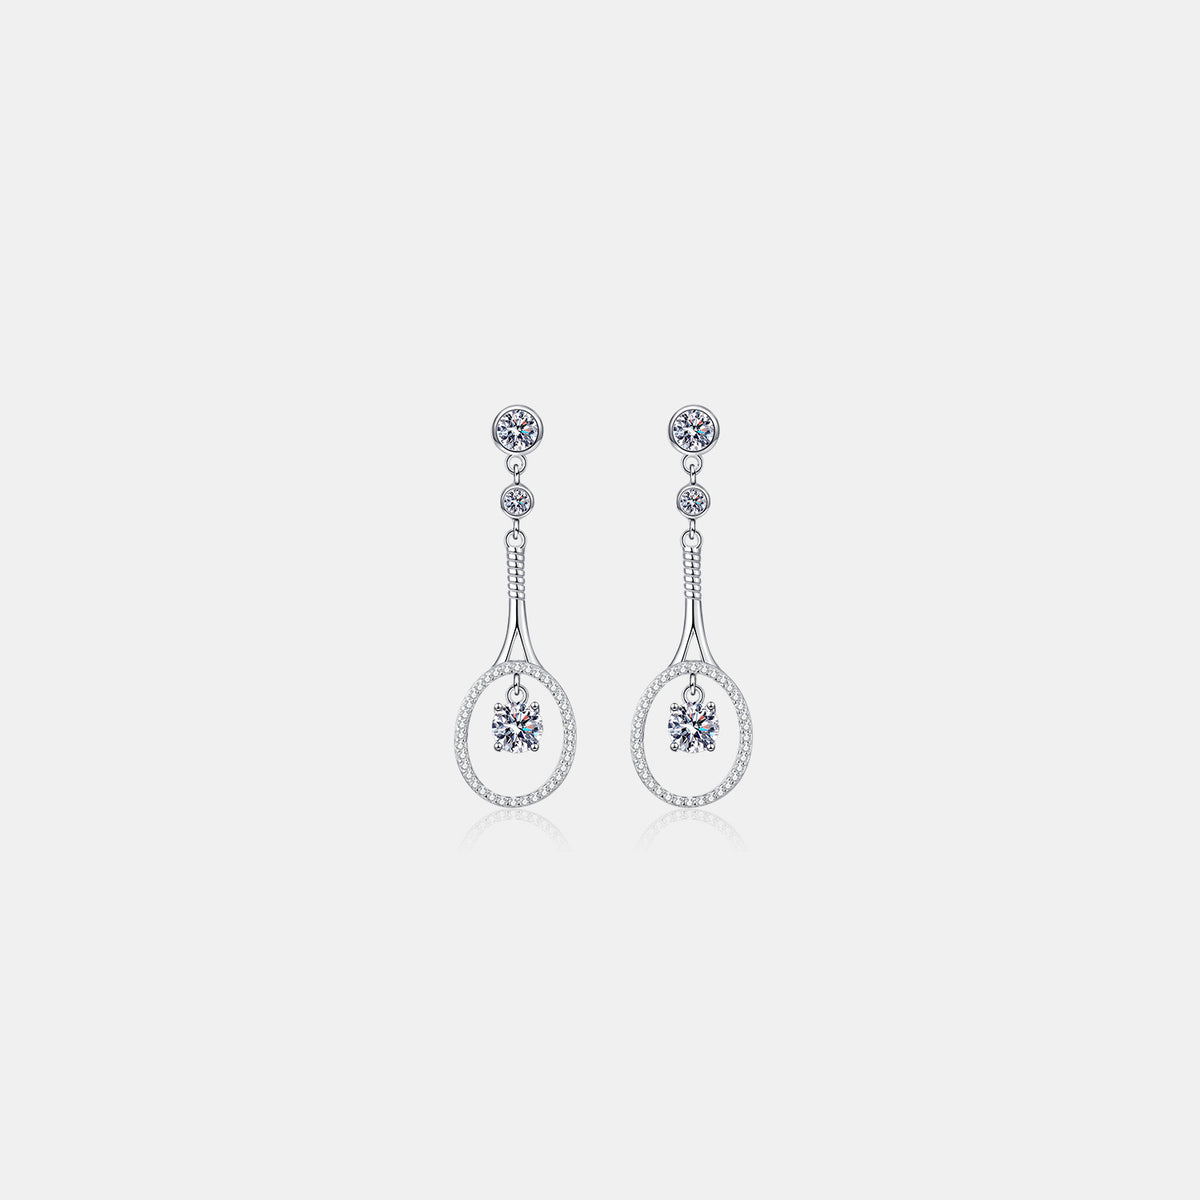 1 Carat Moissanite 925 Sterling Silver Drop Earrings